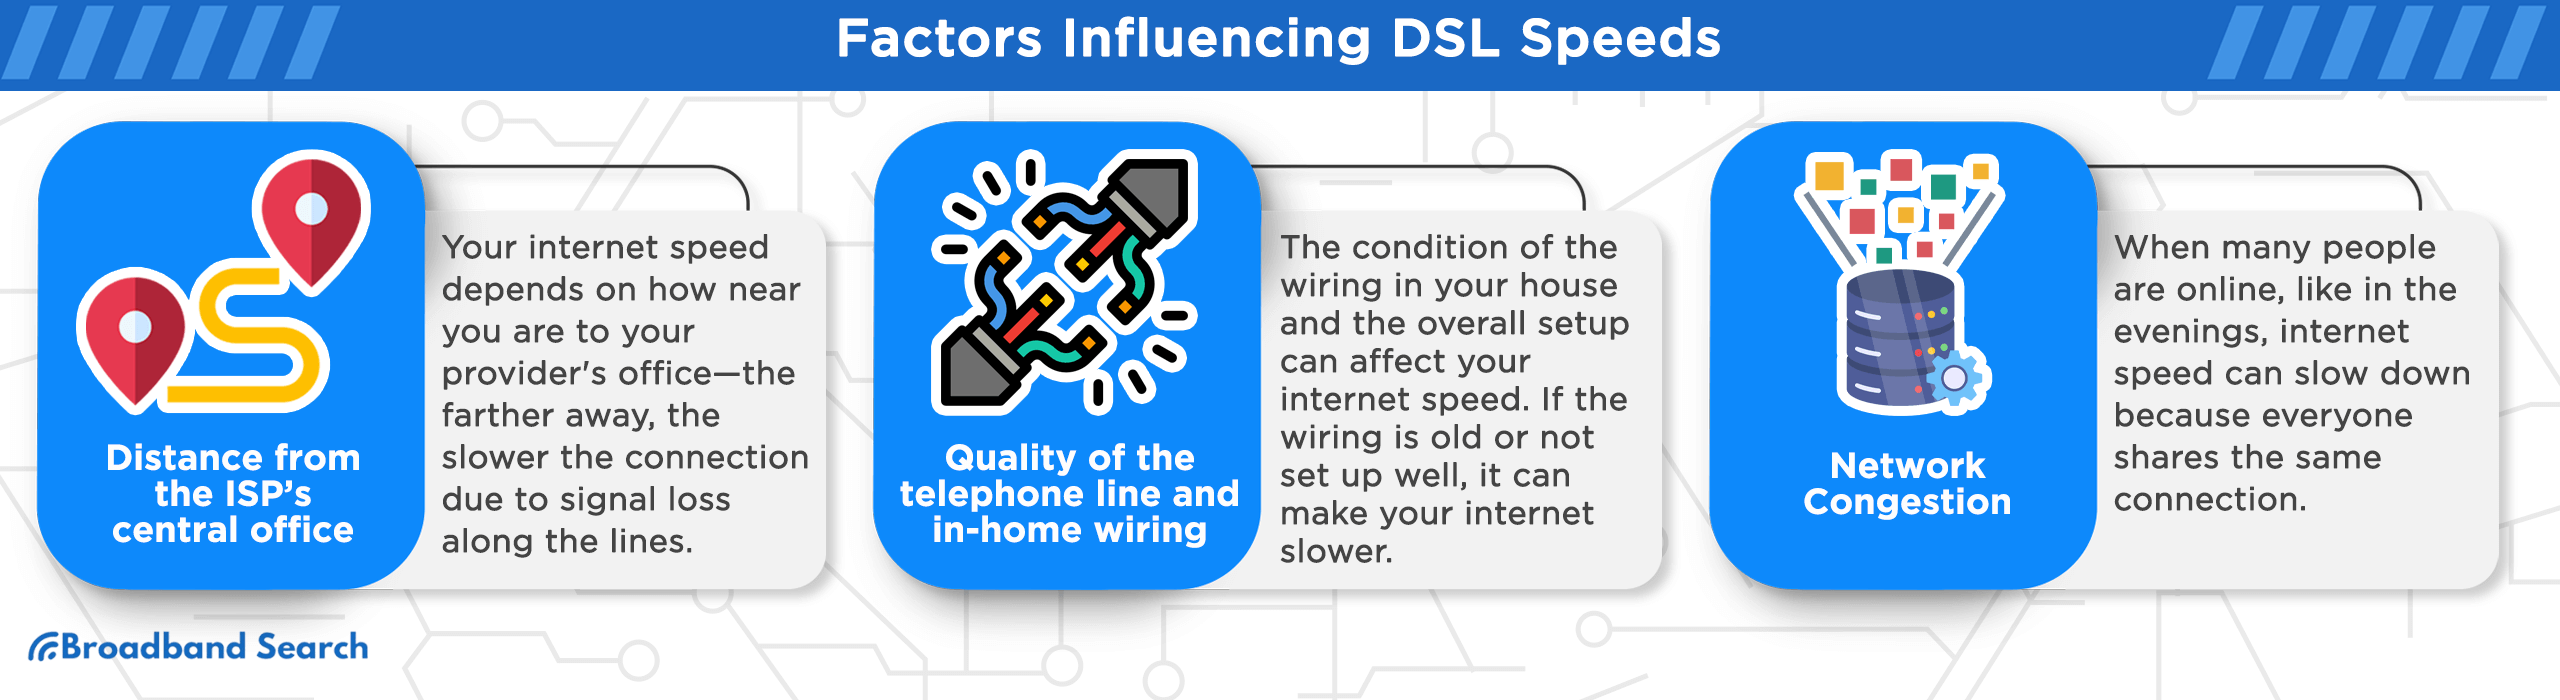 Factors Influencing DSL Speeds